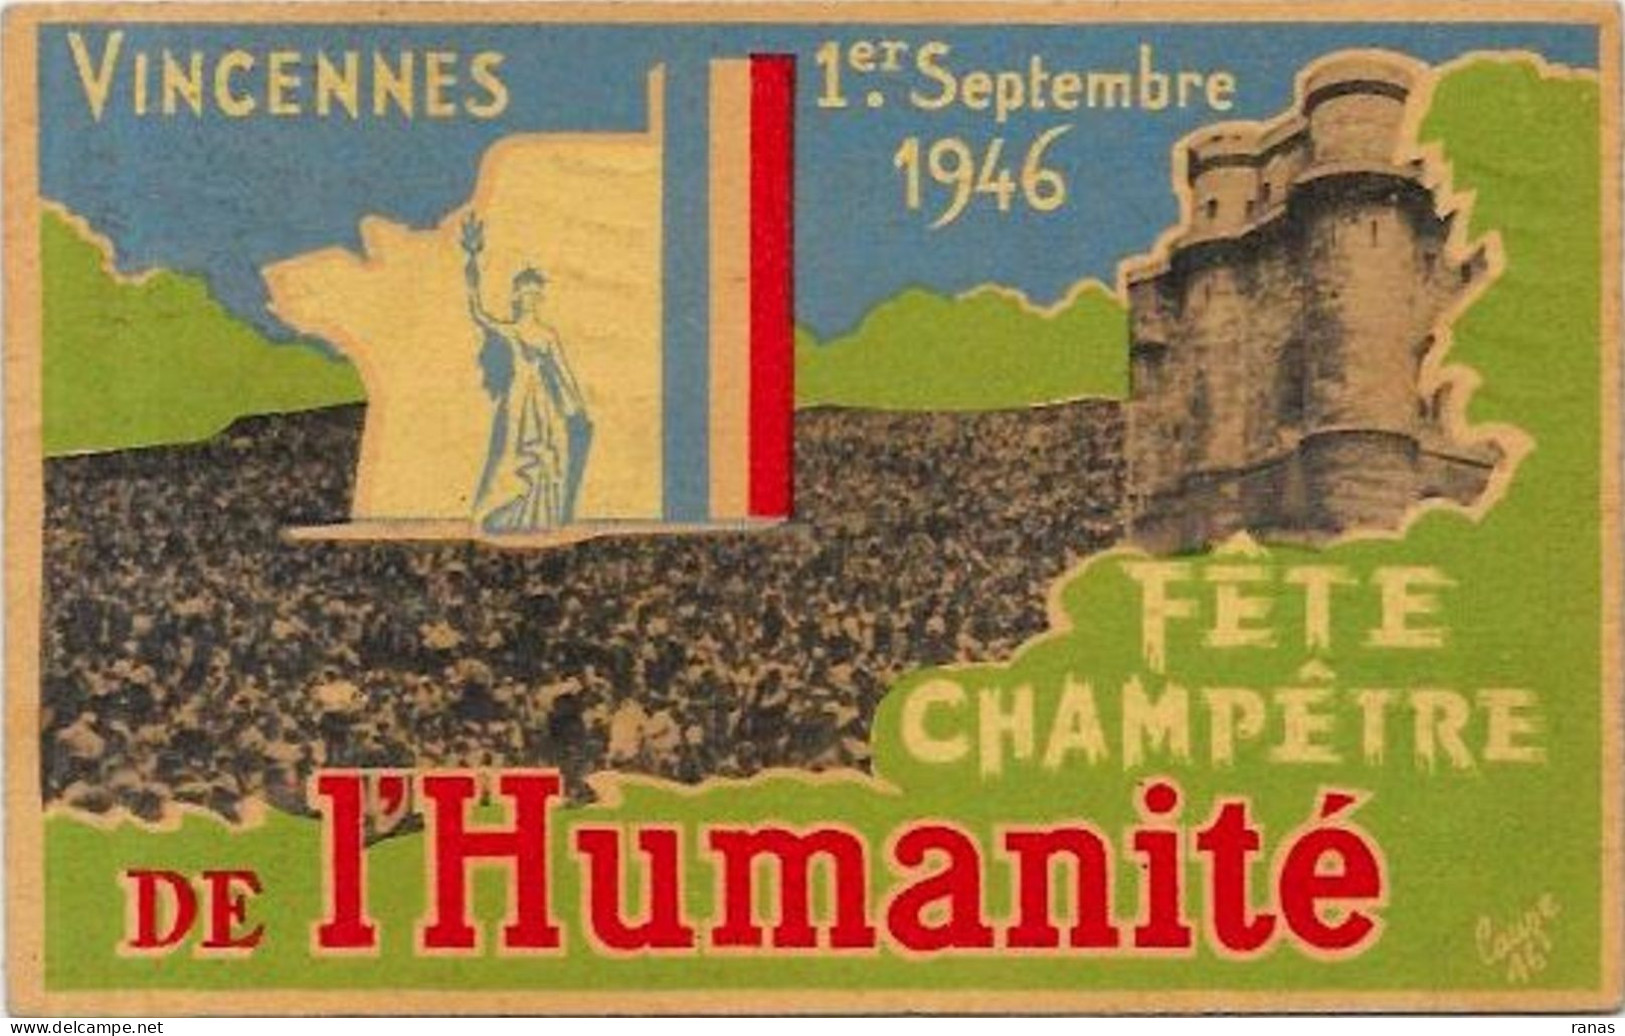 CPSM Parti Communiste 1946 Vincennes Circulé Voir Scan Du Dos Lauze - Political Parties & Elections